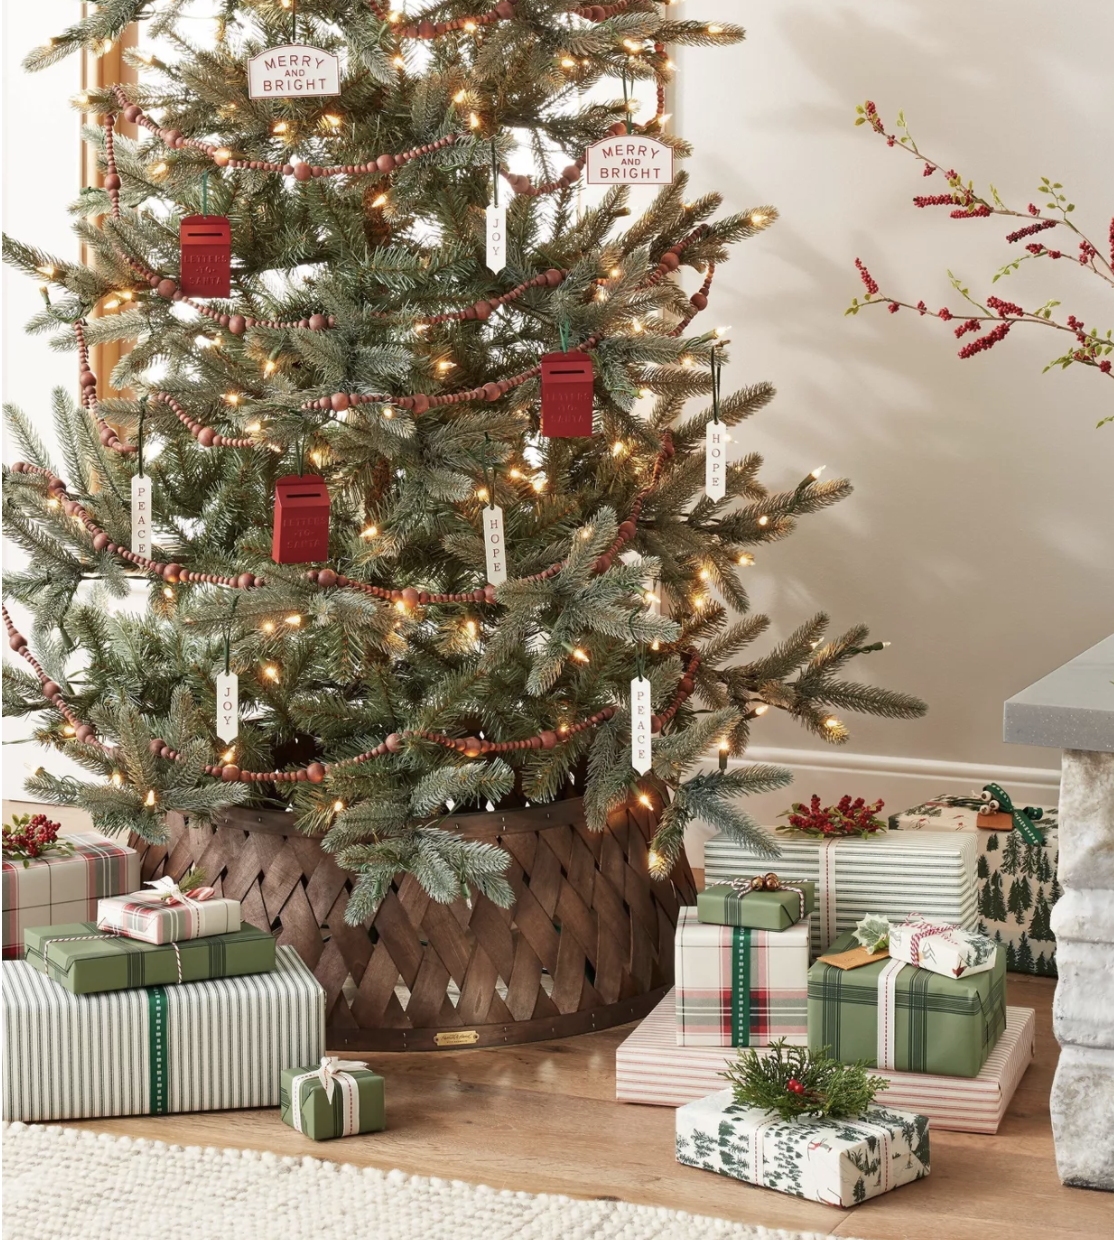 Christmas tree collar with Christmas tree and presents